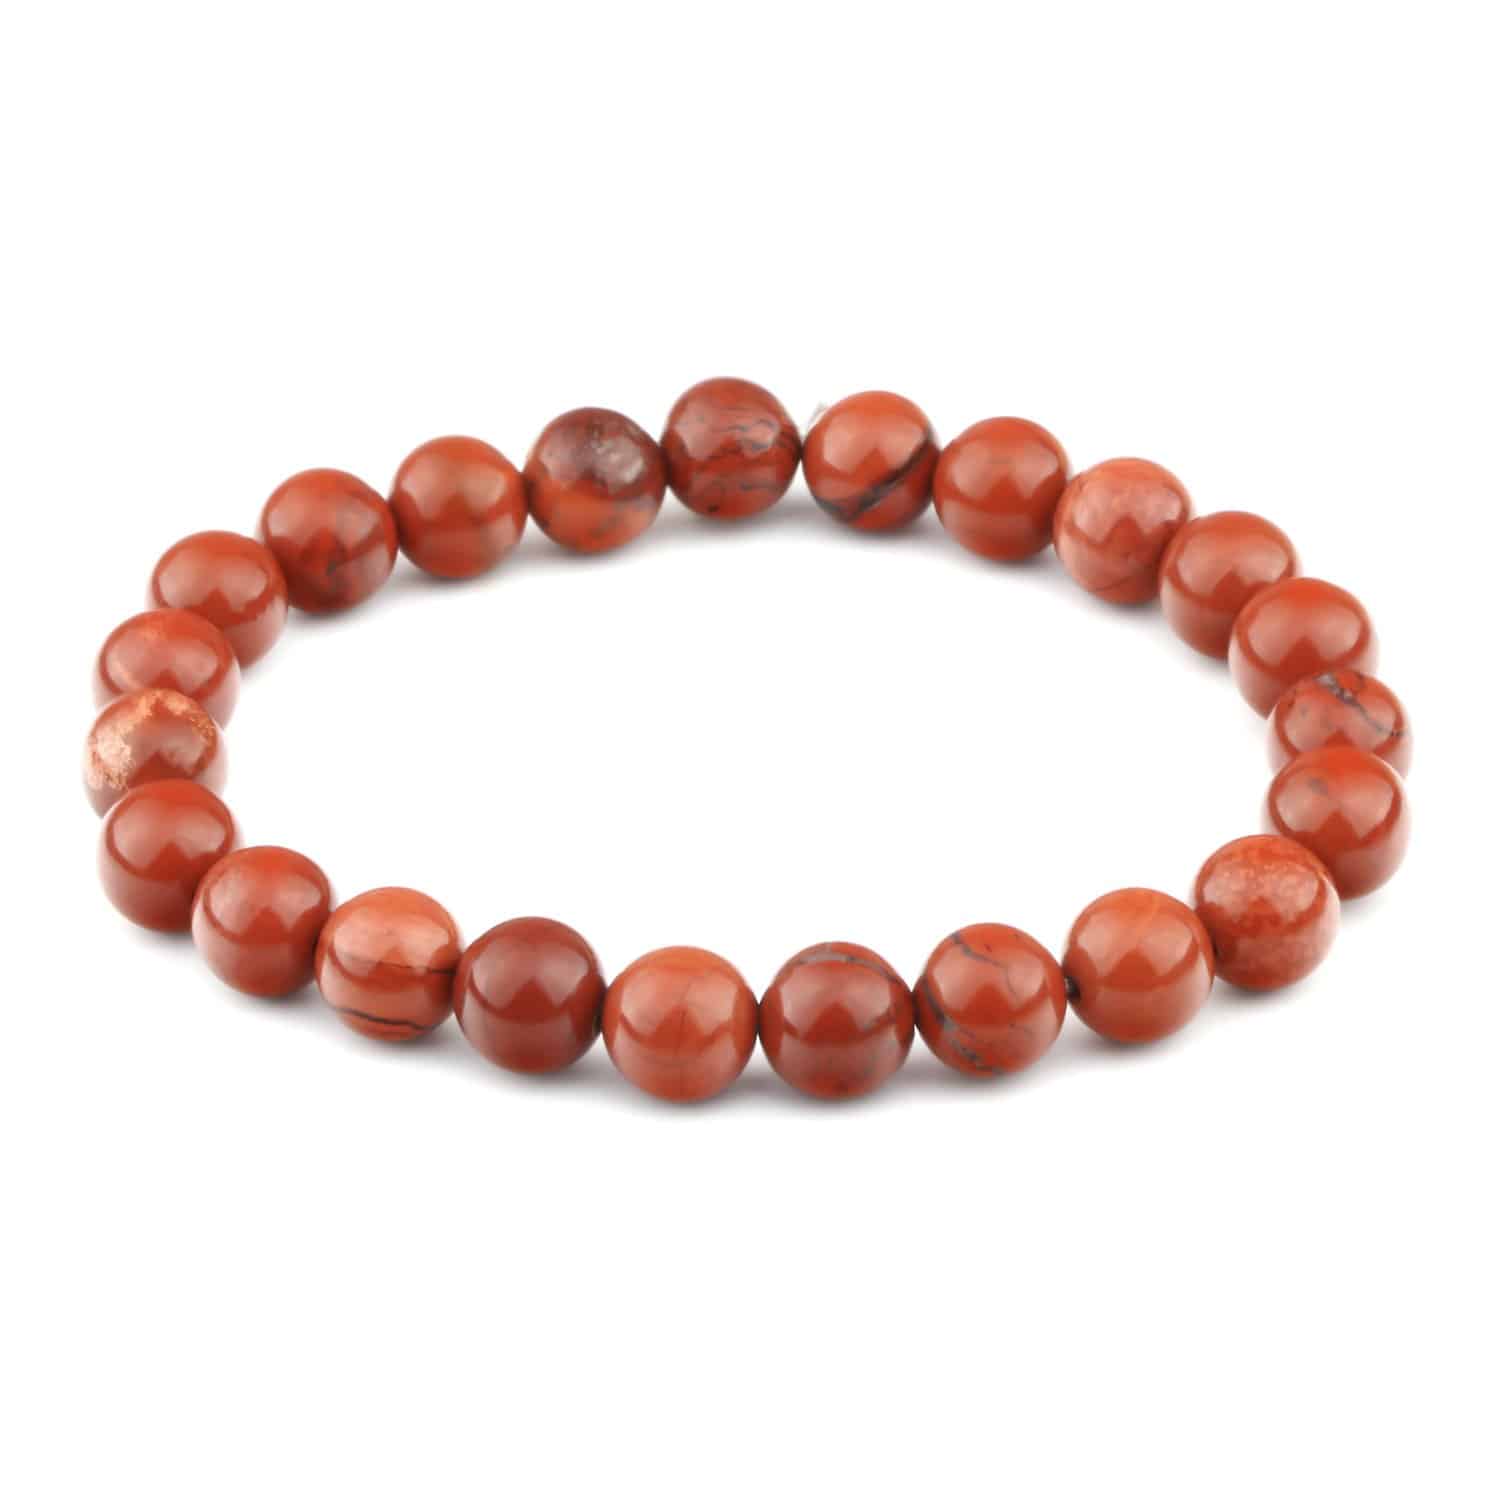 Buy Online Natural Mookaite Jasper Tube Beads Stone Bracelet